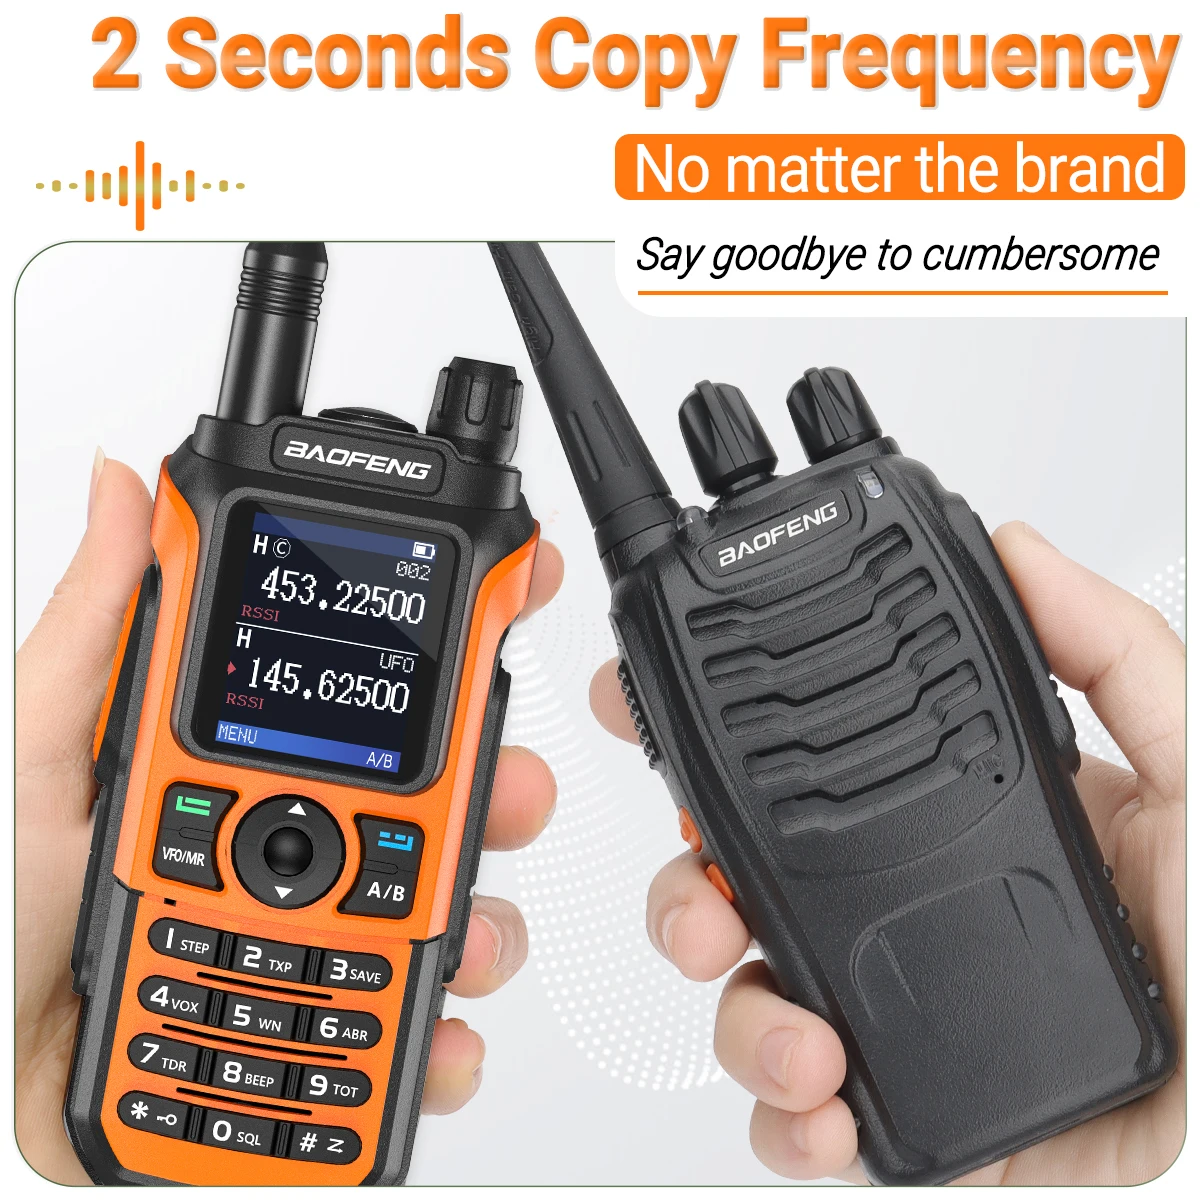 Baofeng UV-21 PRO V2 walkie talkie dlouhé rozsah bezdrátový kopie frekvence type-c nabíječka tri pás sytý vodotěsný dva způsob rádio